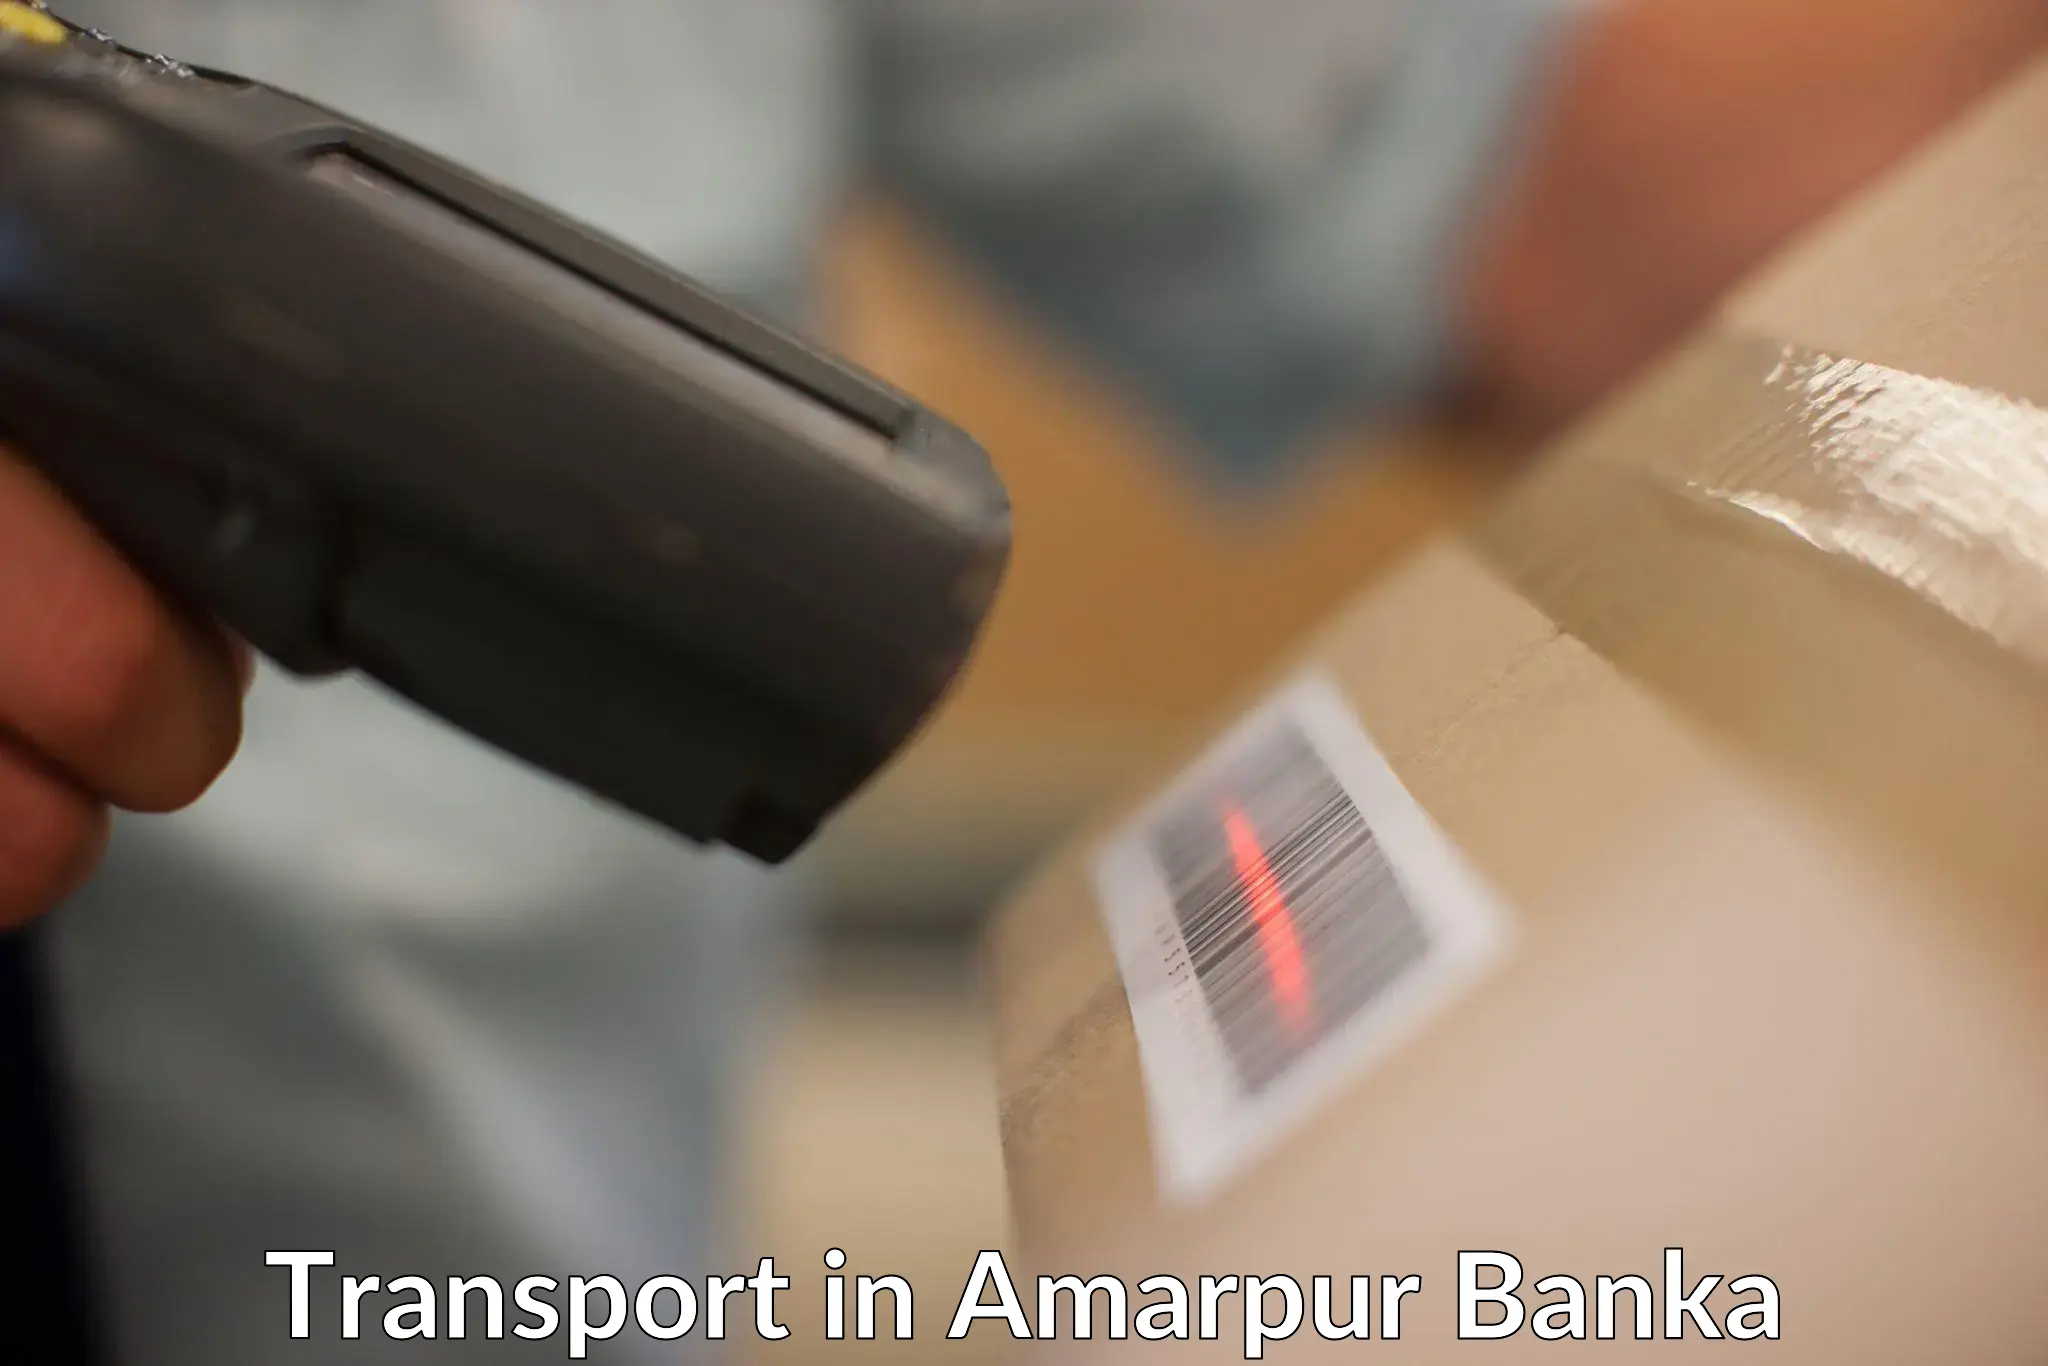 Pick up transport service in Amarpur Banka